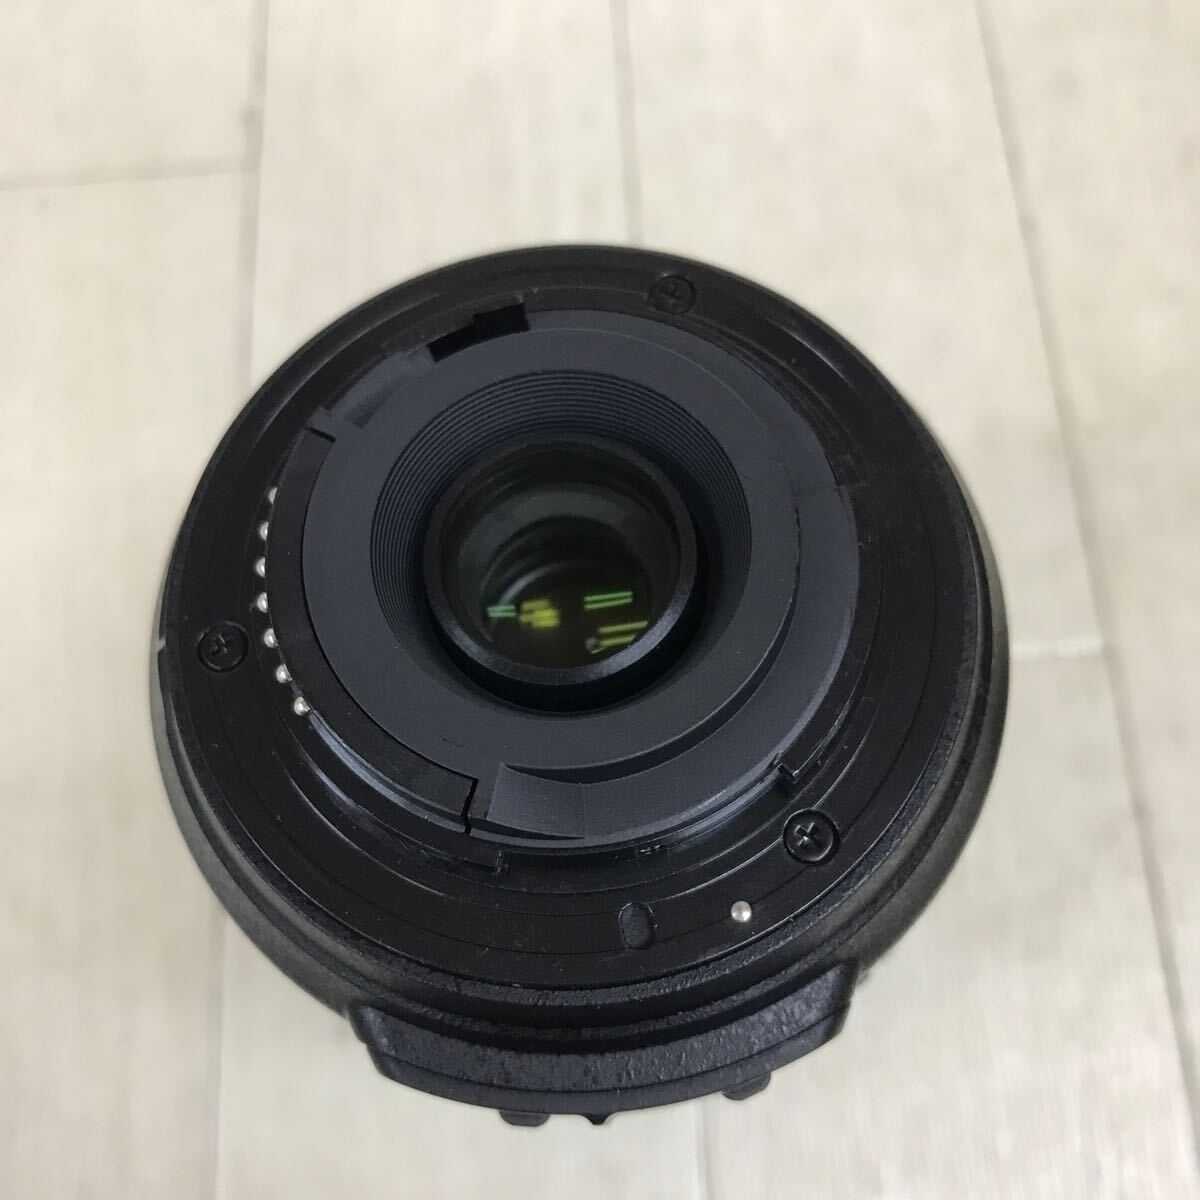 B1964 Nikon DX VR AF-S Nikkor 55-200mm 1:4-5.6G ED operation not yet verification Junk 